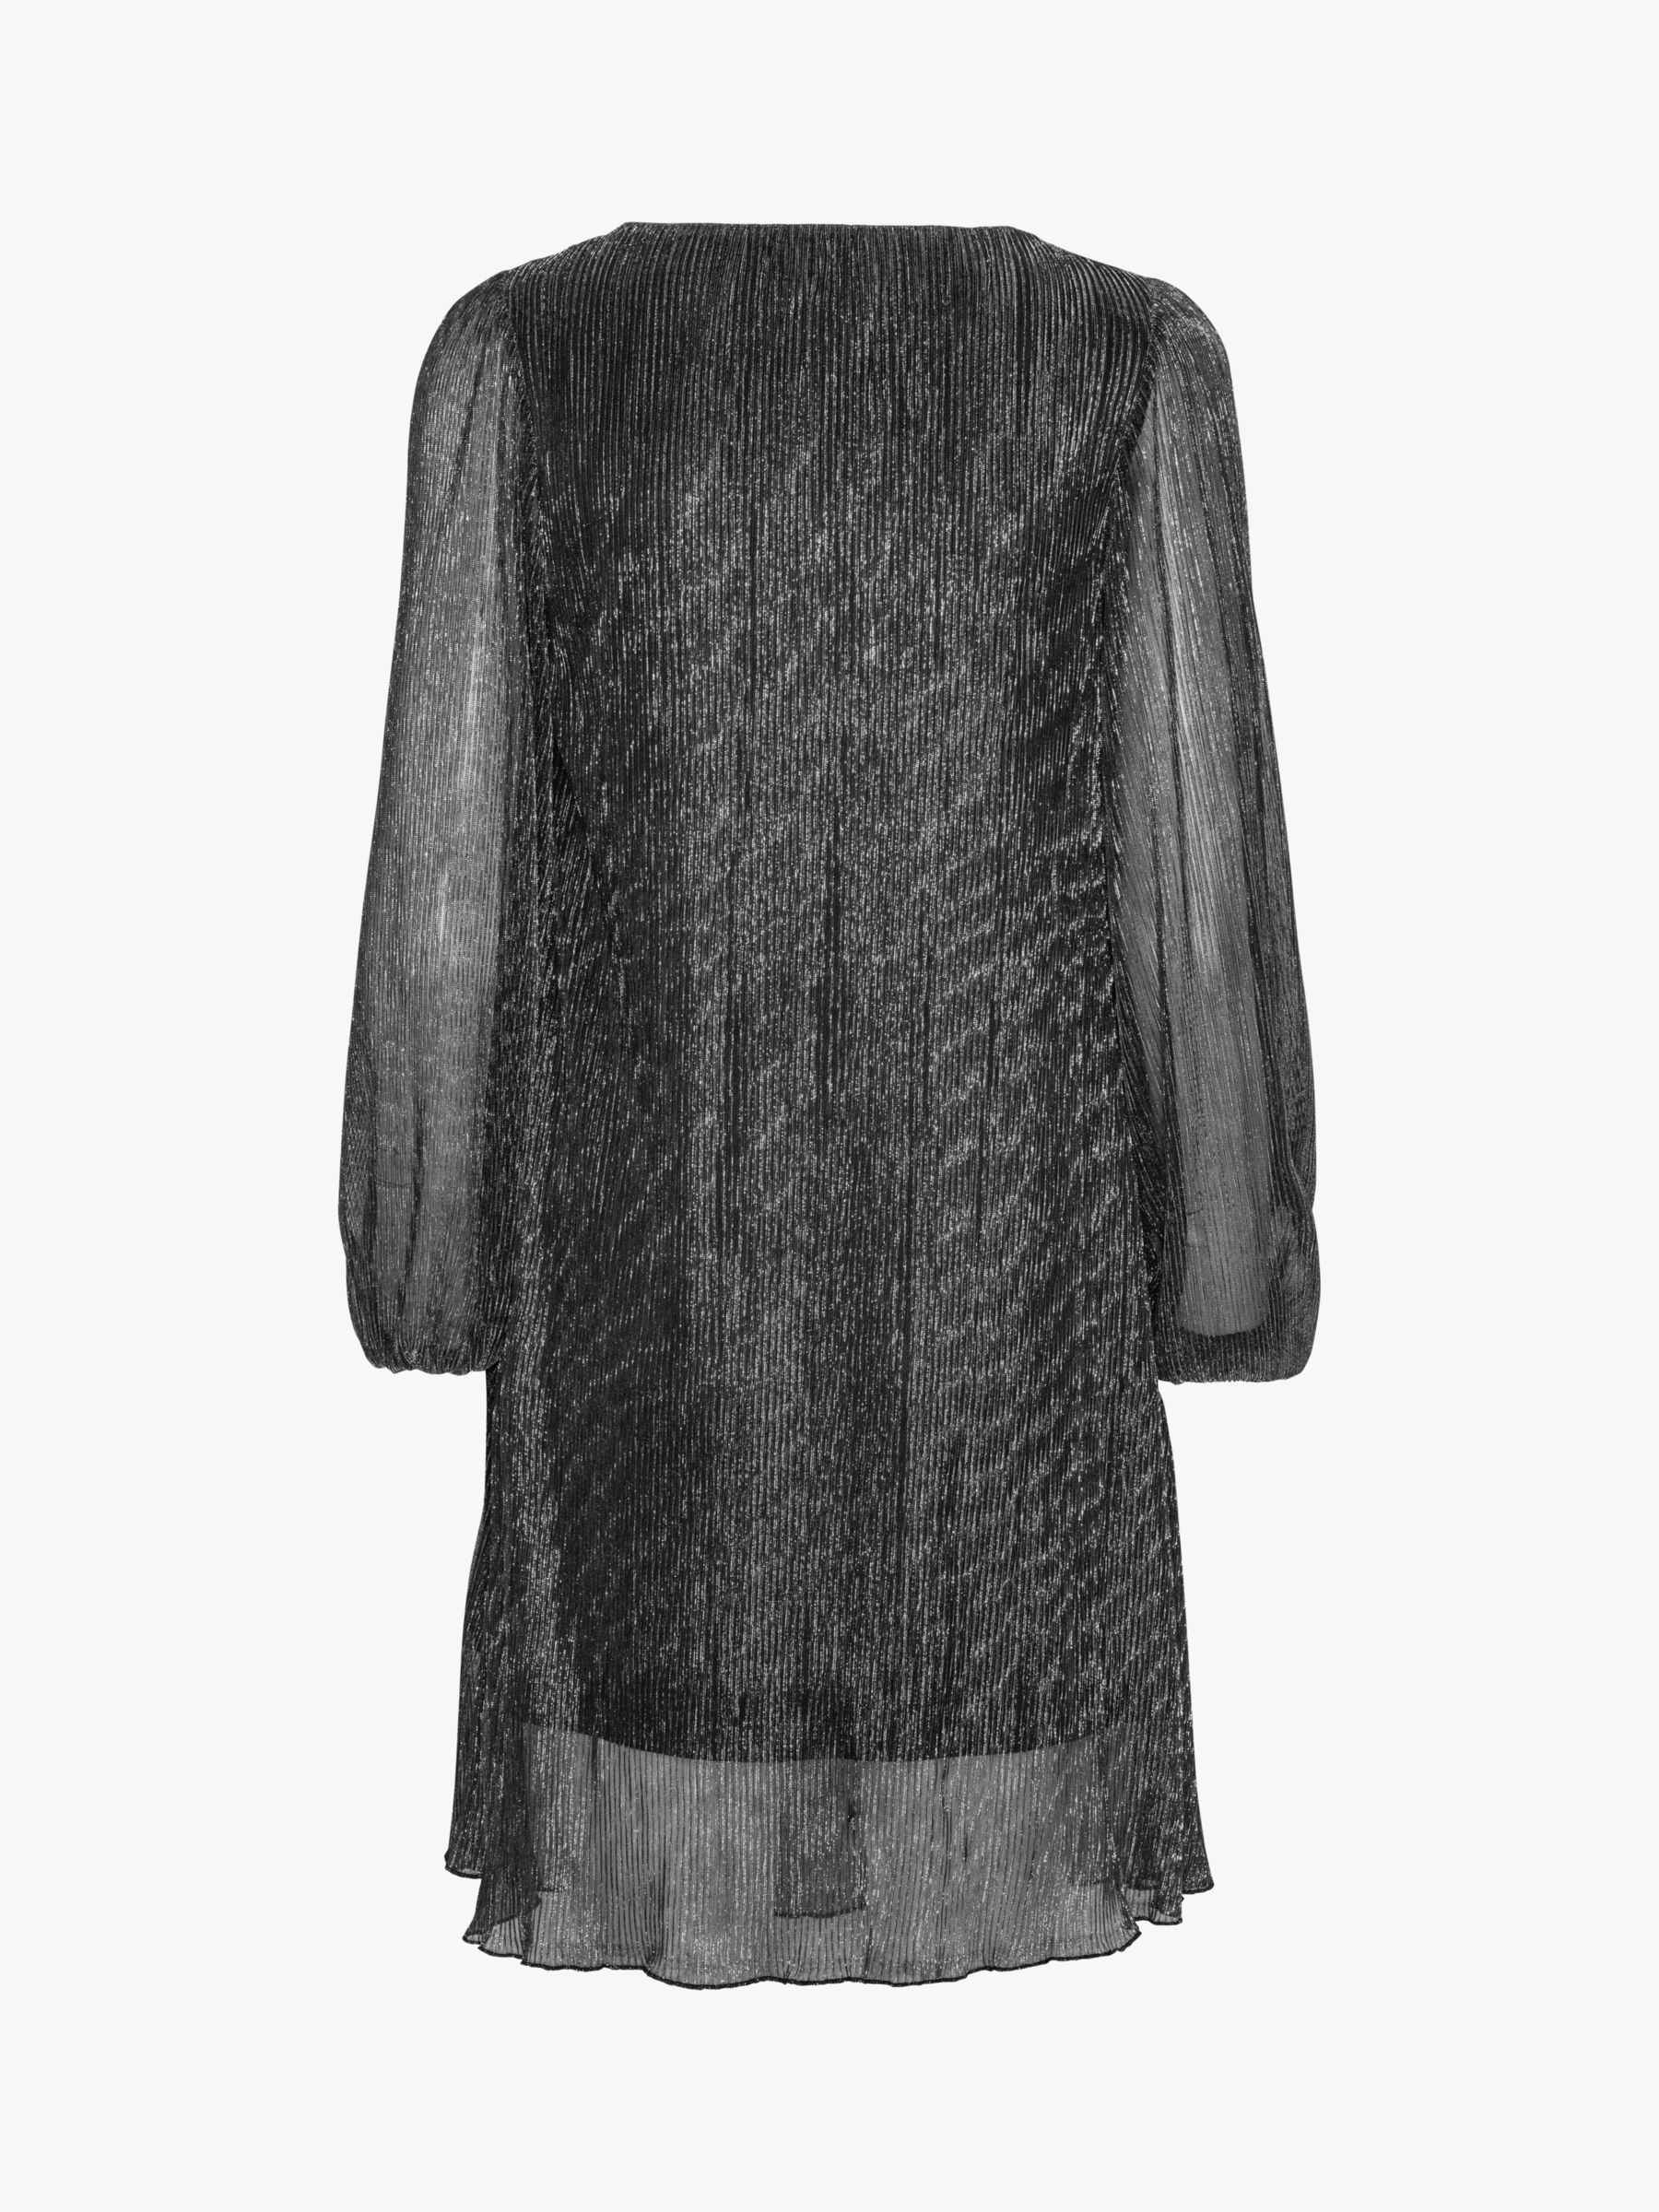 A-VIEW Fiba Mini Dress, Black/Silver, 10